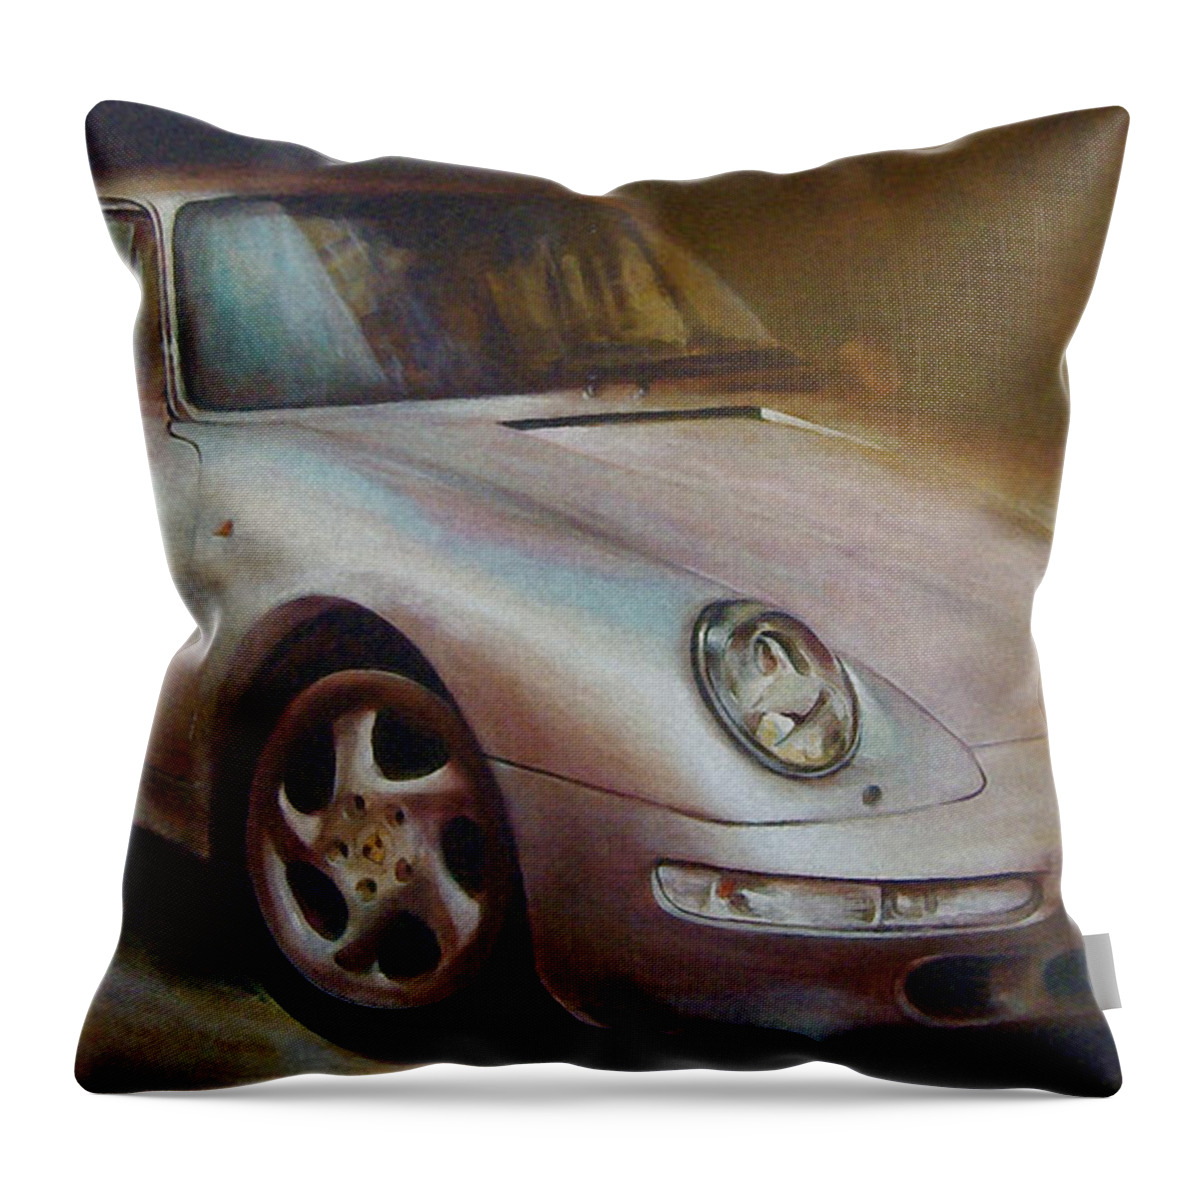 Car Throw Pillow featuring the painting Porsche by Vali Irina Ciobanu